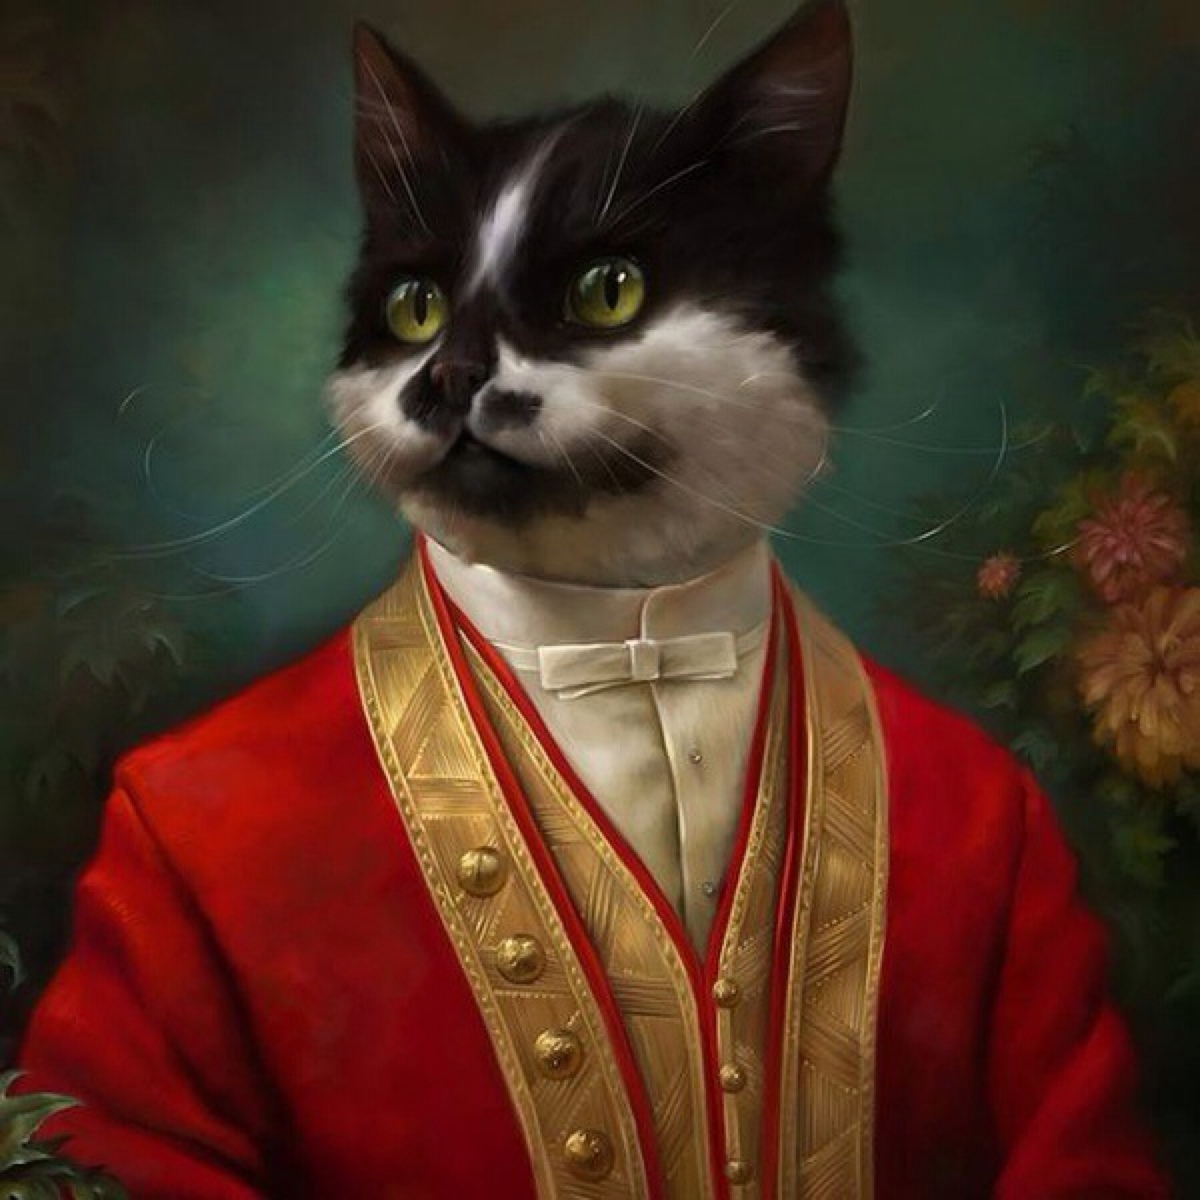 当油画中的人物变成霸气的猫咪